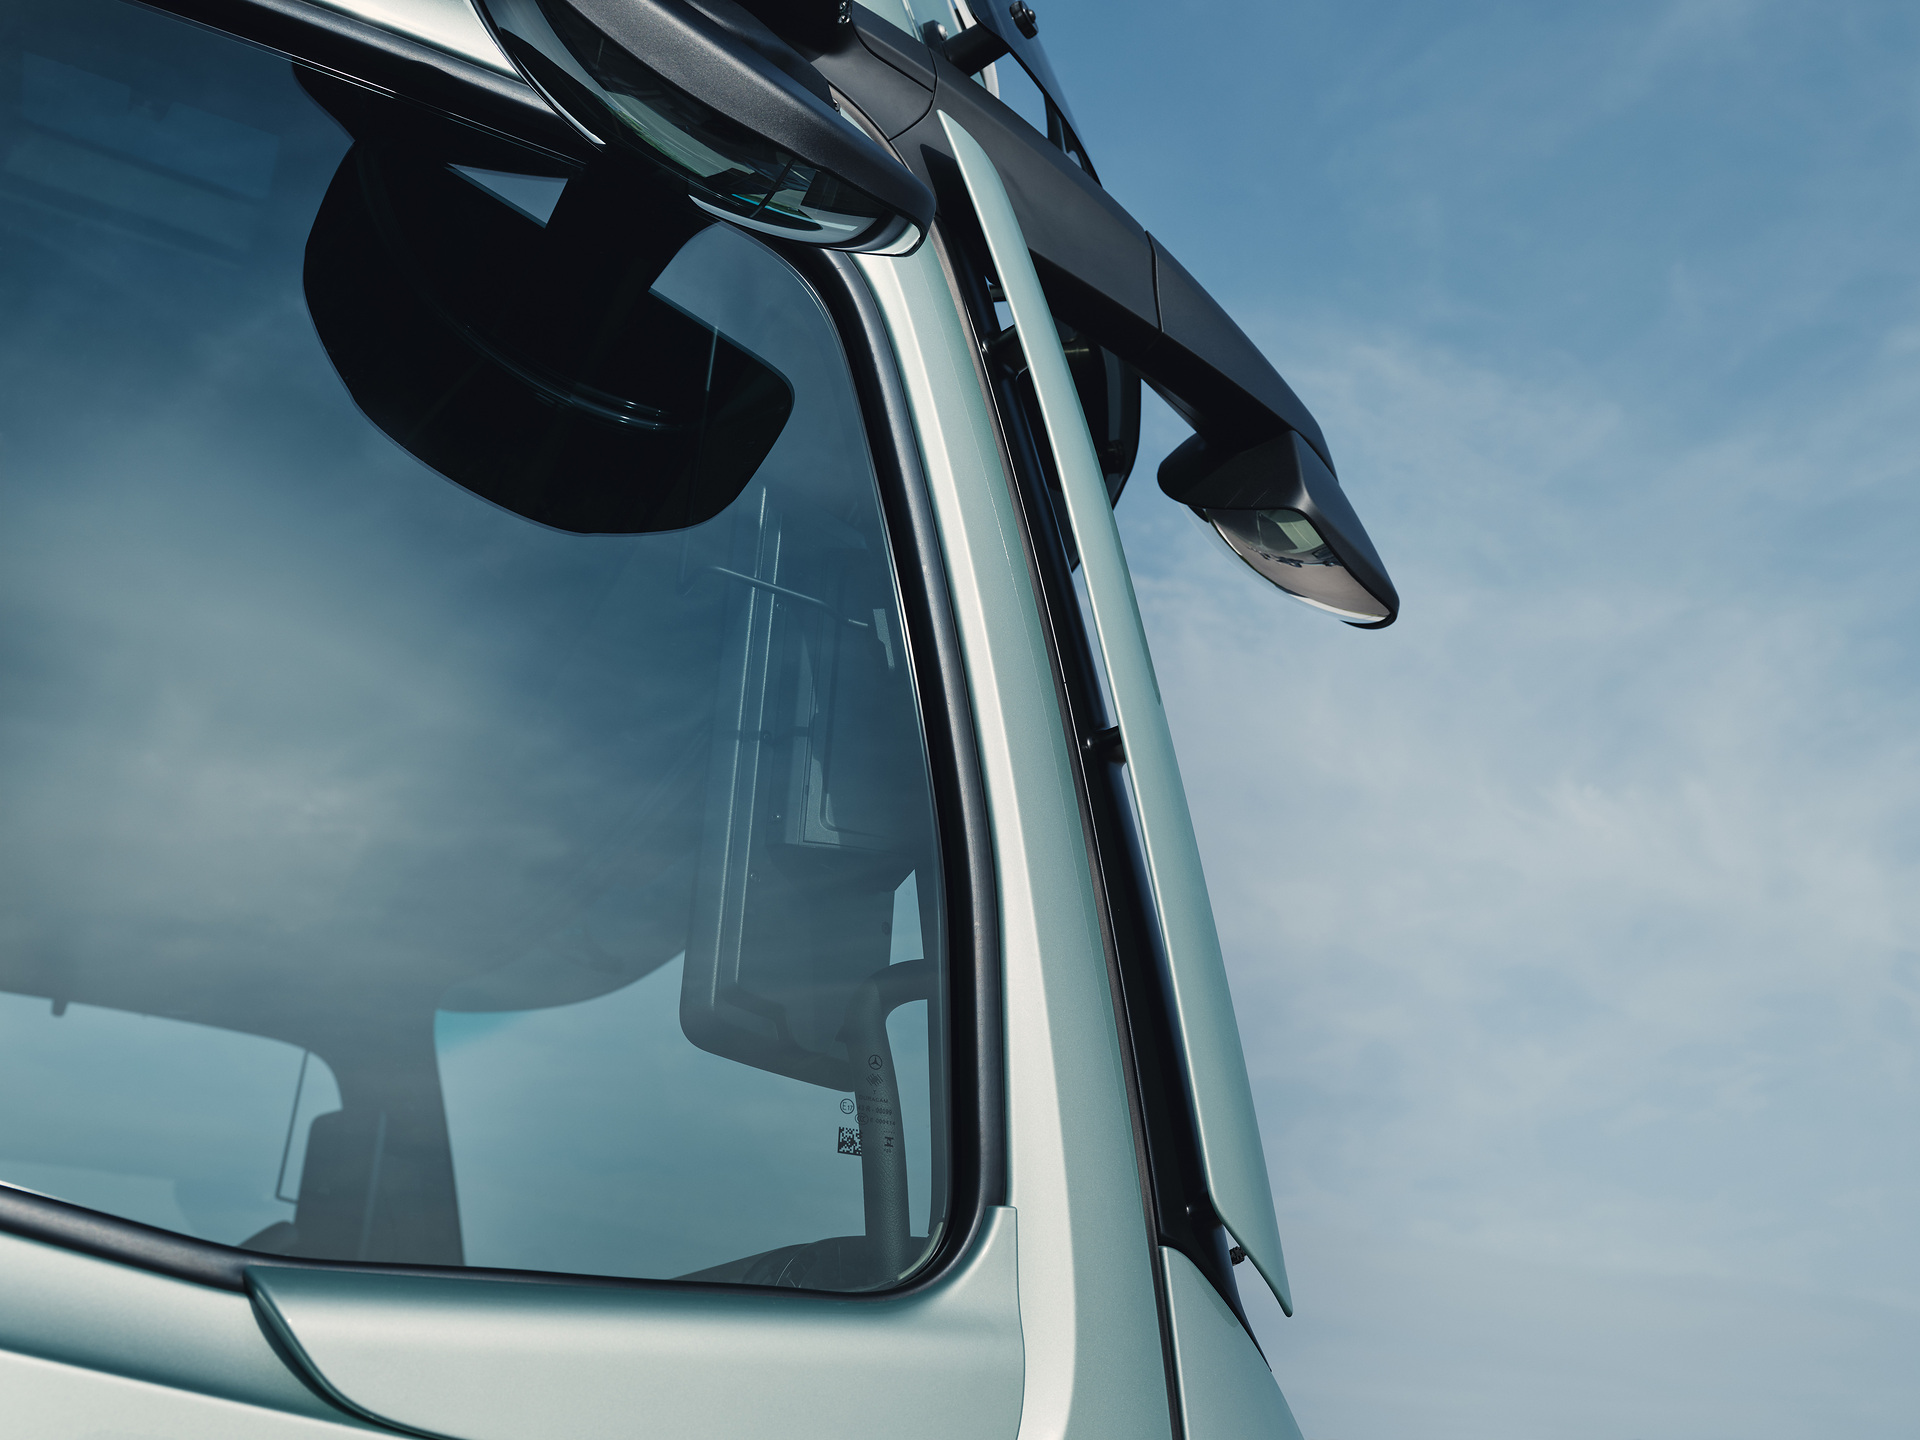 Noch mehr Effizienz auf der Straße: Der neue Actros L von Mercedes-Benz Trucks mit futuristischer ProCabin, noch besserer Aerodynamik und innovativen Assistenzsystemen